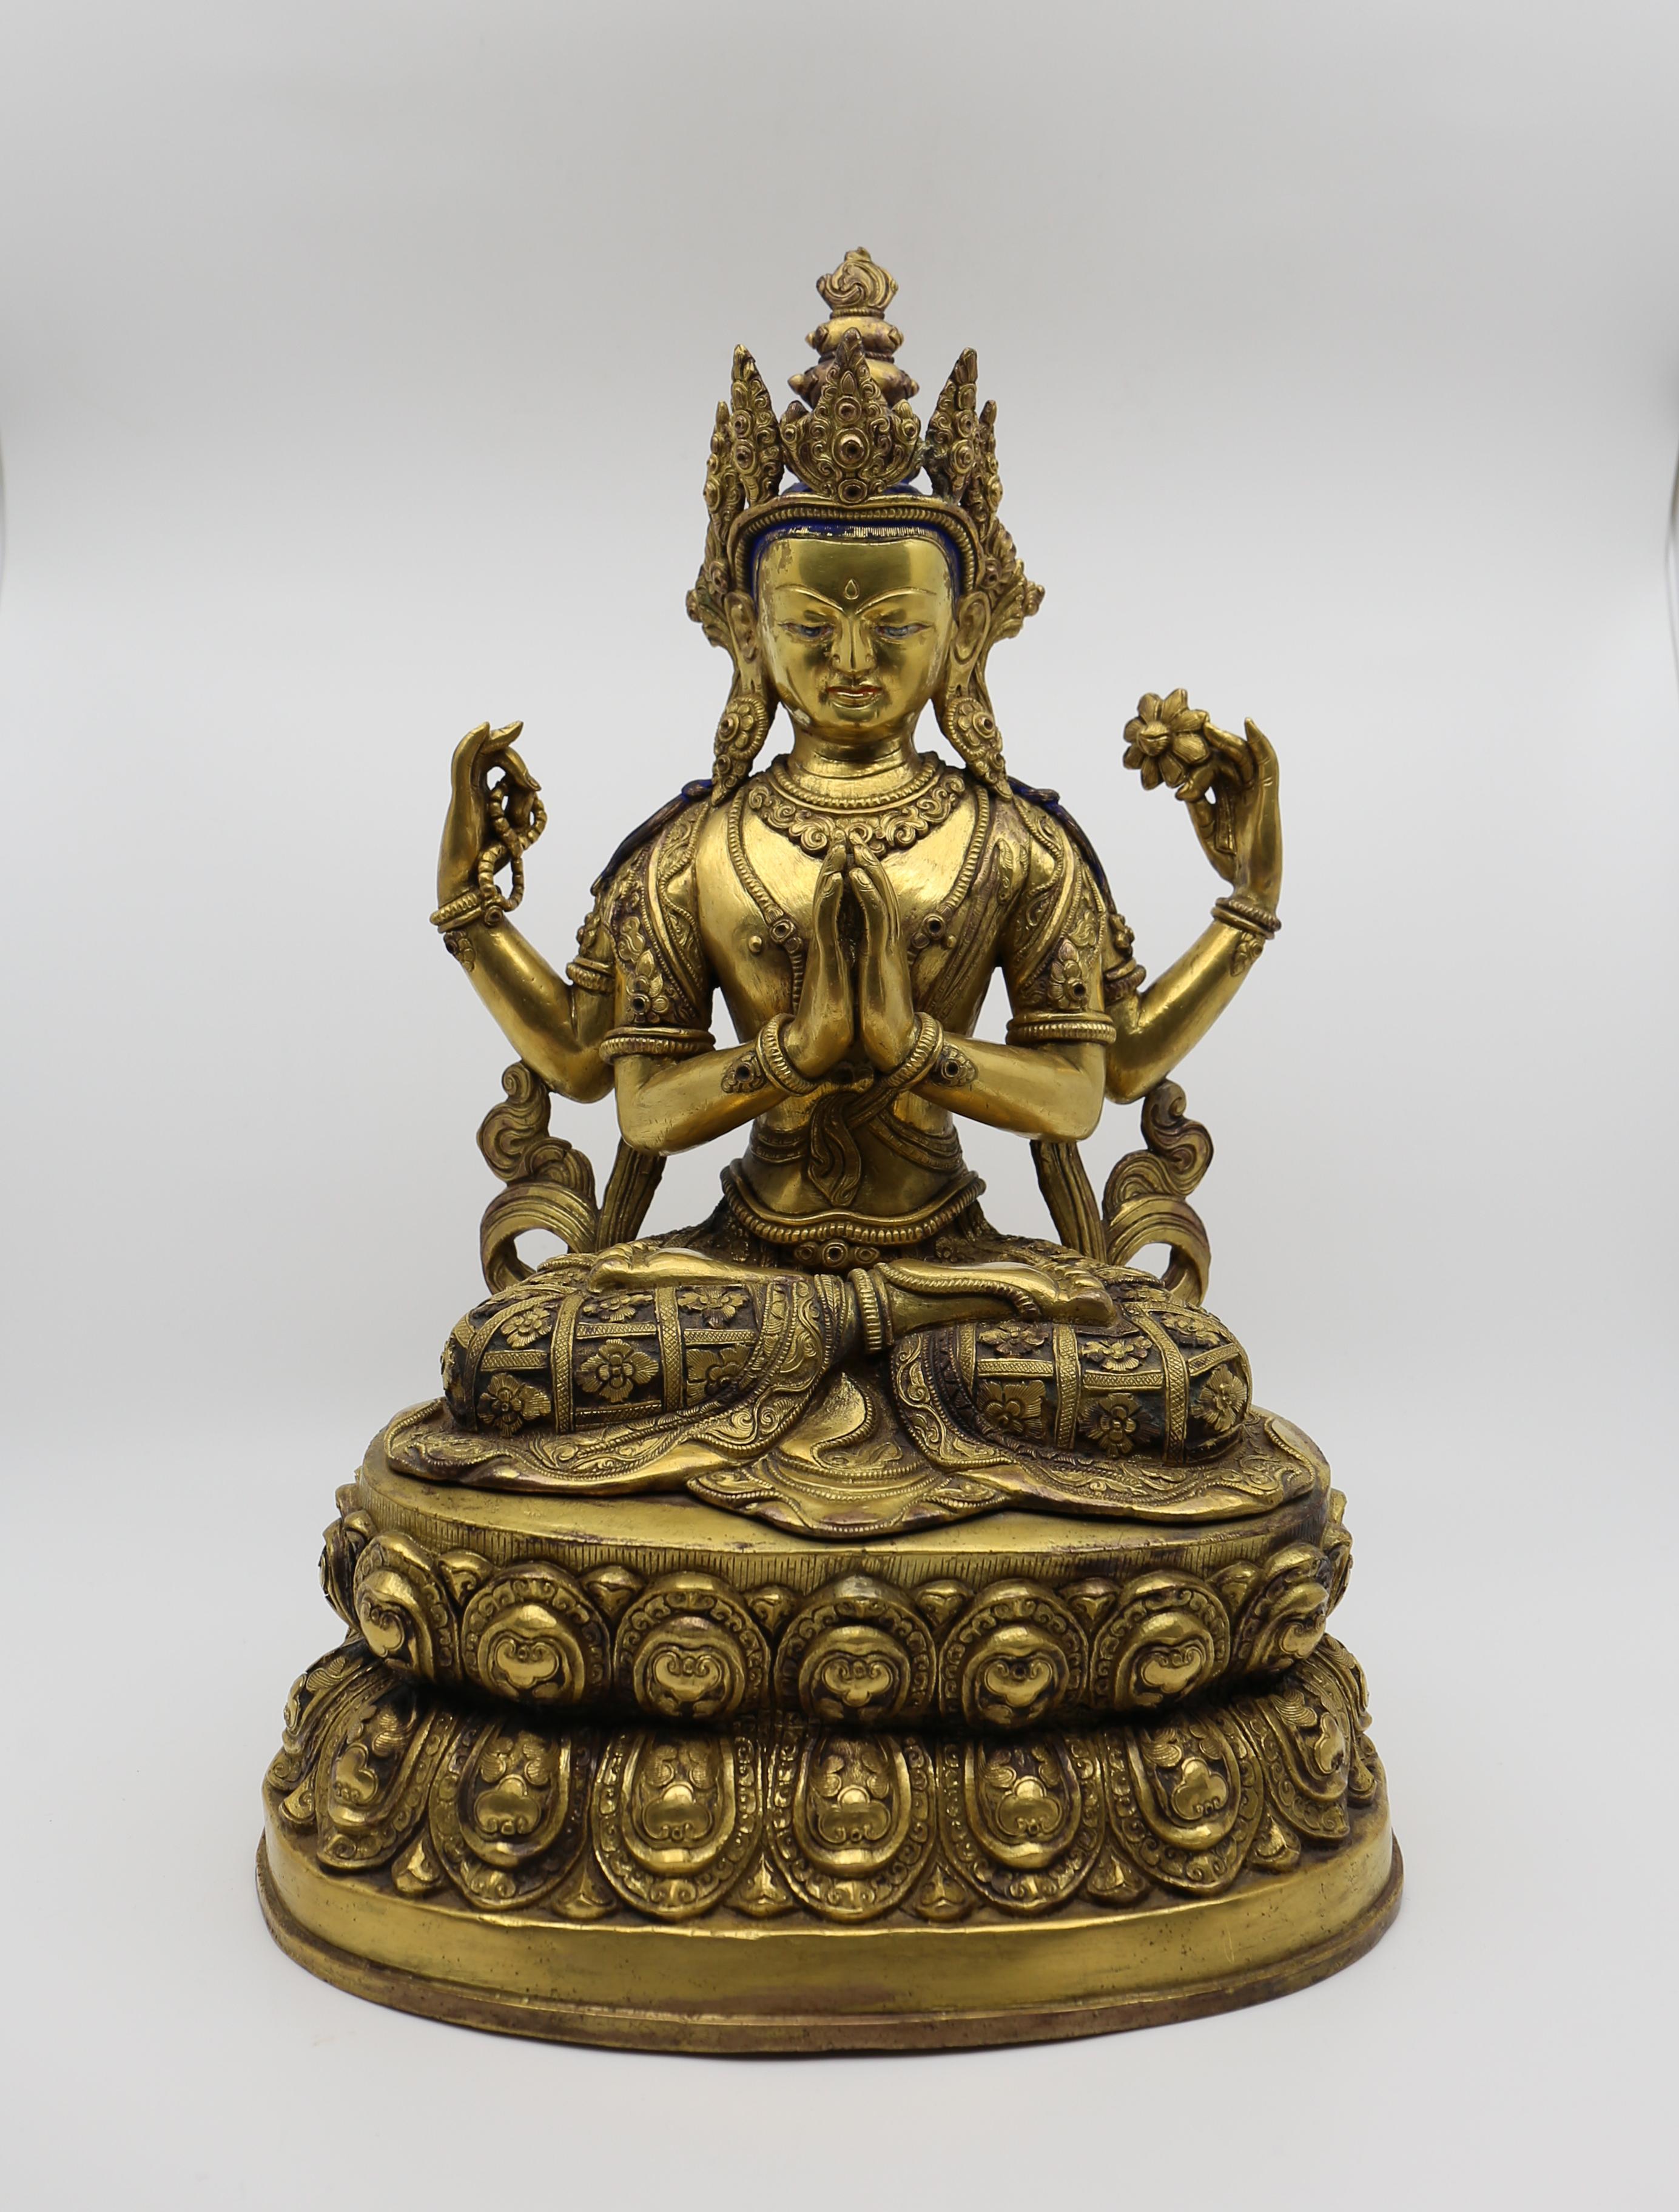 Buddha/Bodhisattva aus vergoldeter Bronze, 20. Jahrhundert.
Fein gegossene Buddha-Statue aus vergoldeter Bronze mit modellierten und eingeschnittenen floralen Motiven. Hervorragendes Exemplar - fein gegossen, schön modelliert, mit einer schönen